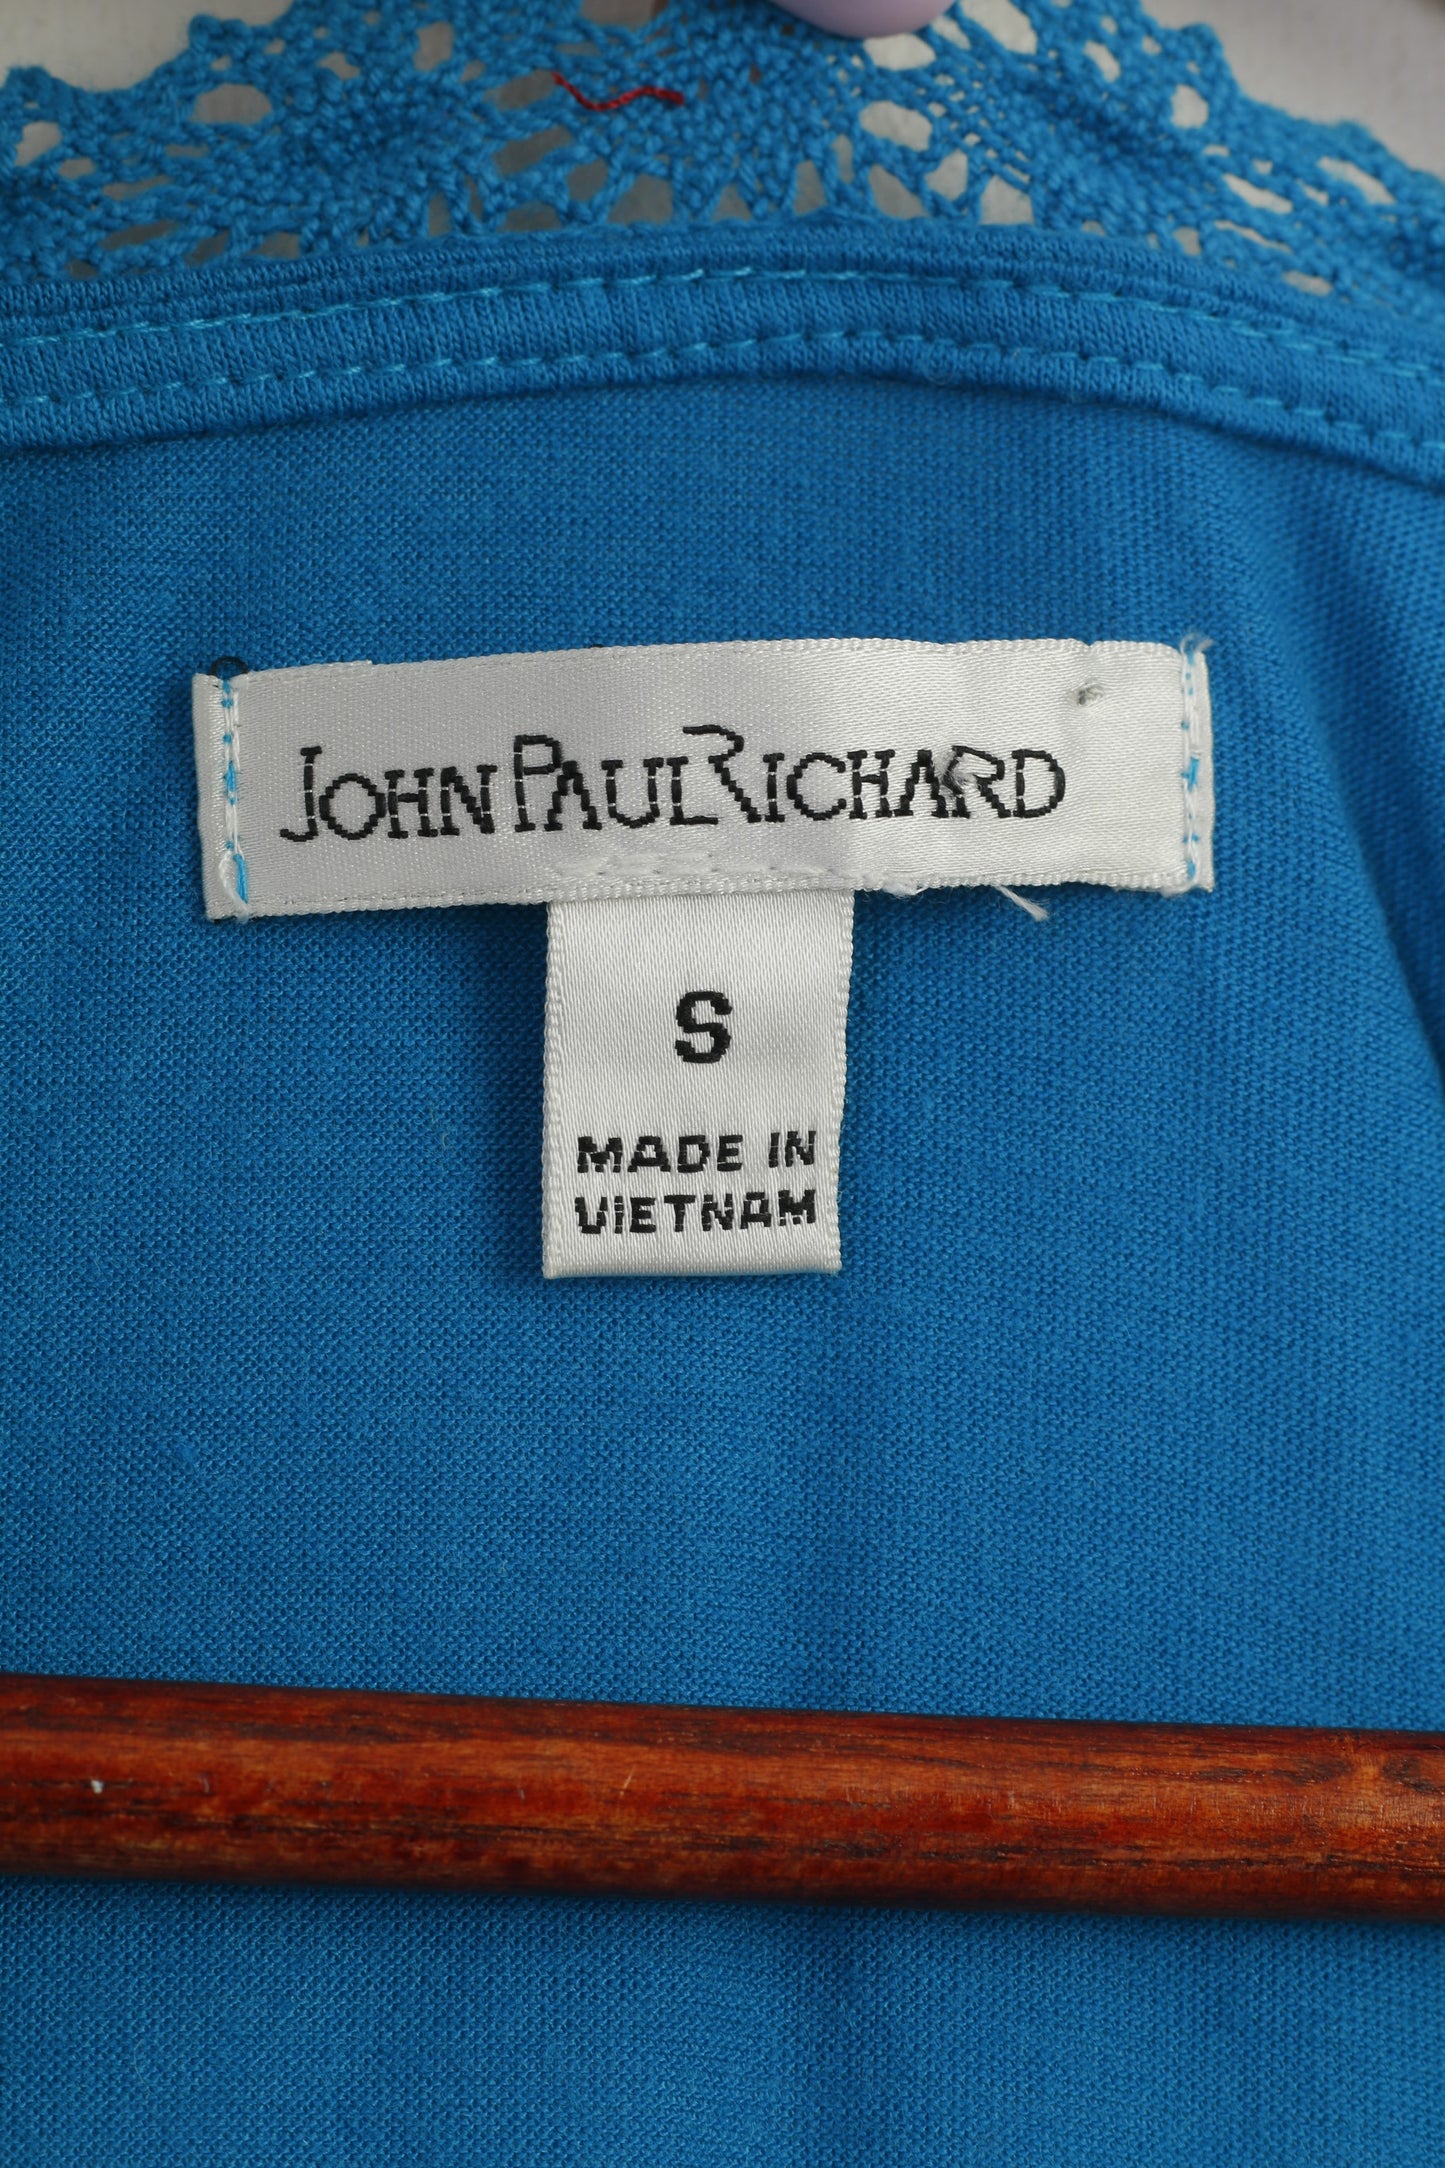 John Paul Richard Women S Dress Sea Turquoise Summer Sundress V Neck Short Sleeve Midi